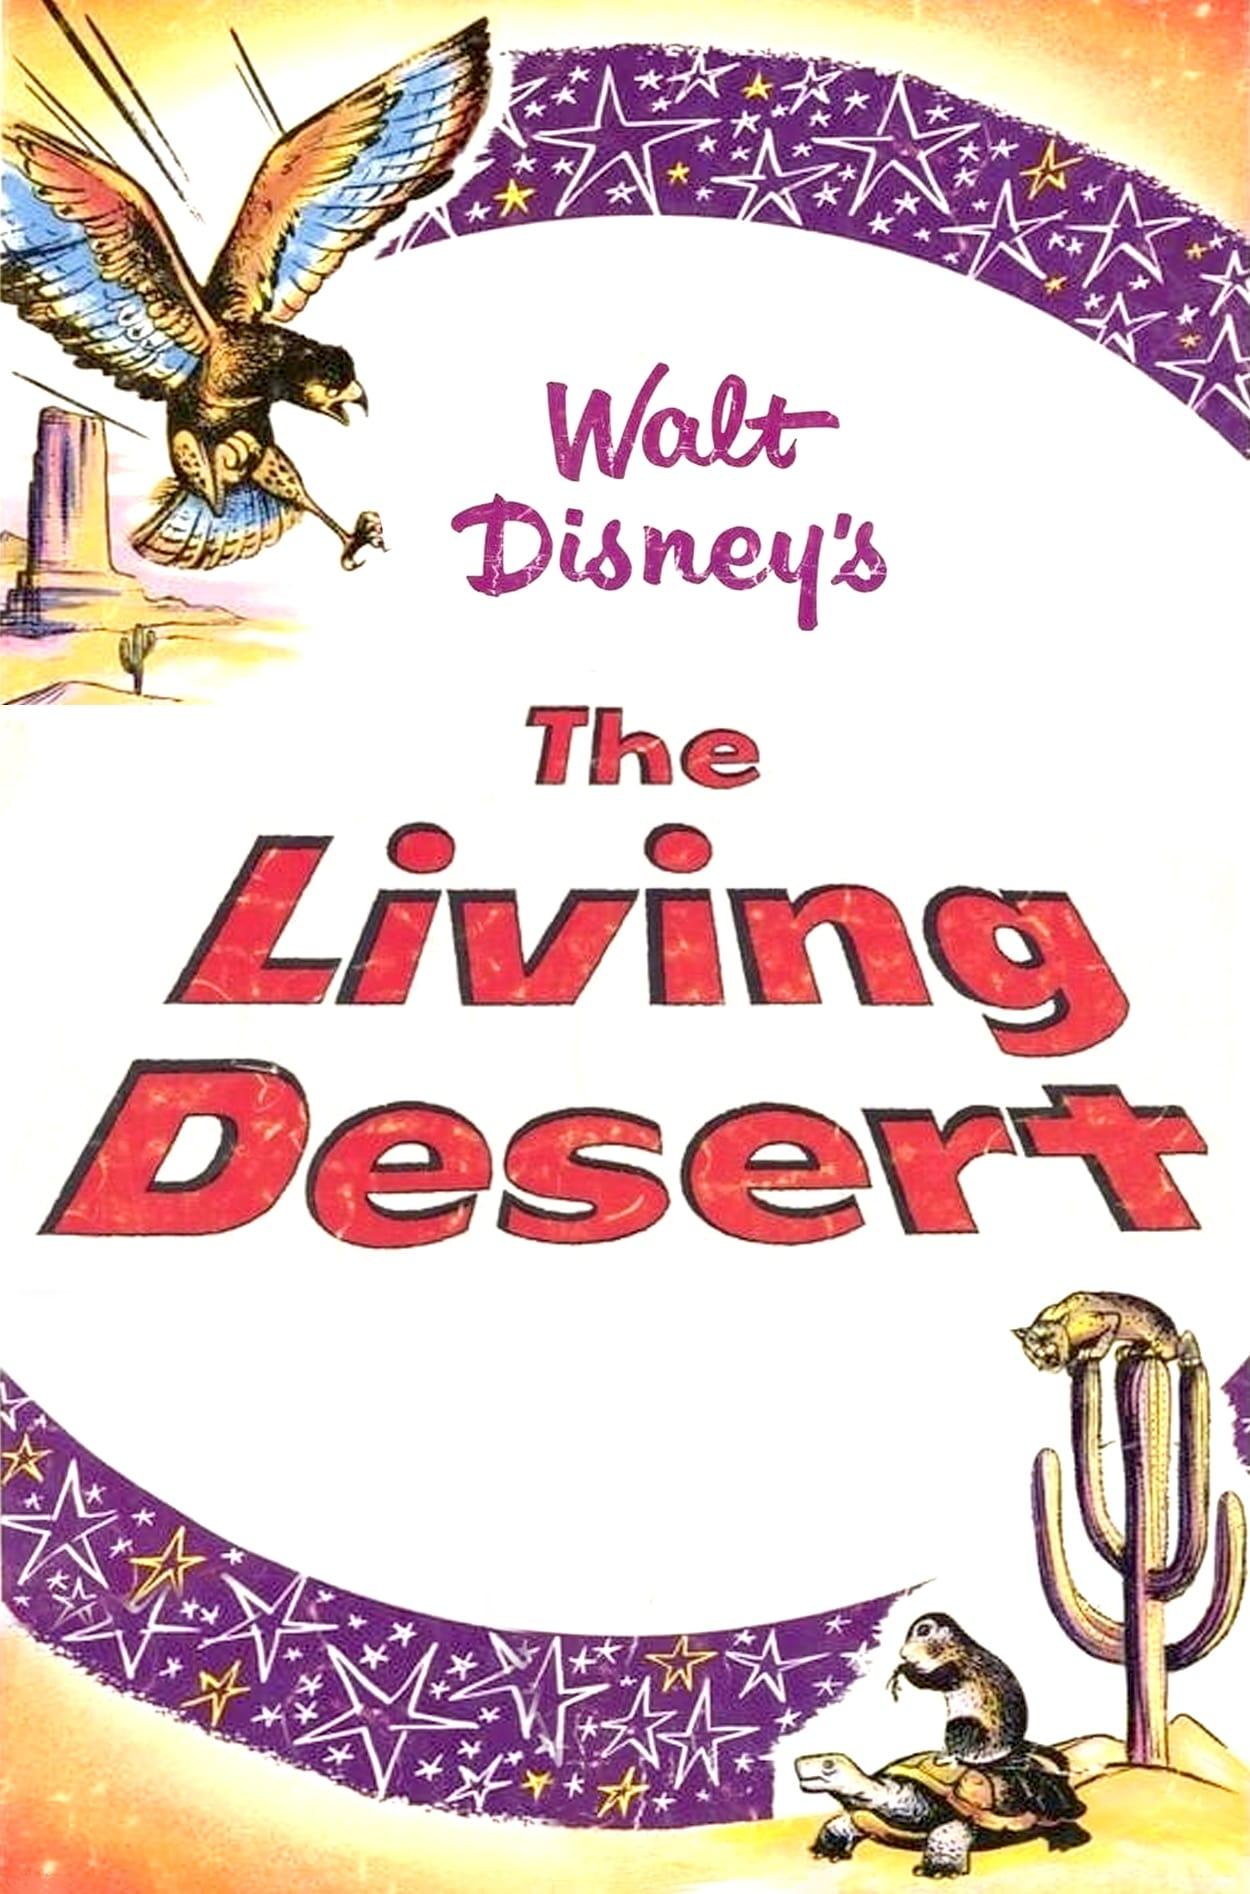 The Living Desert poster